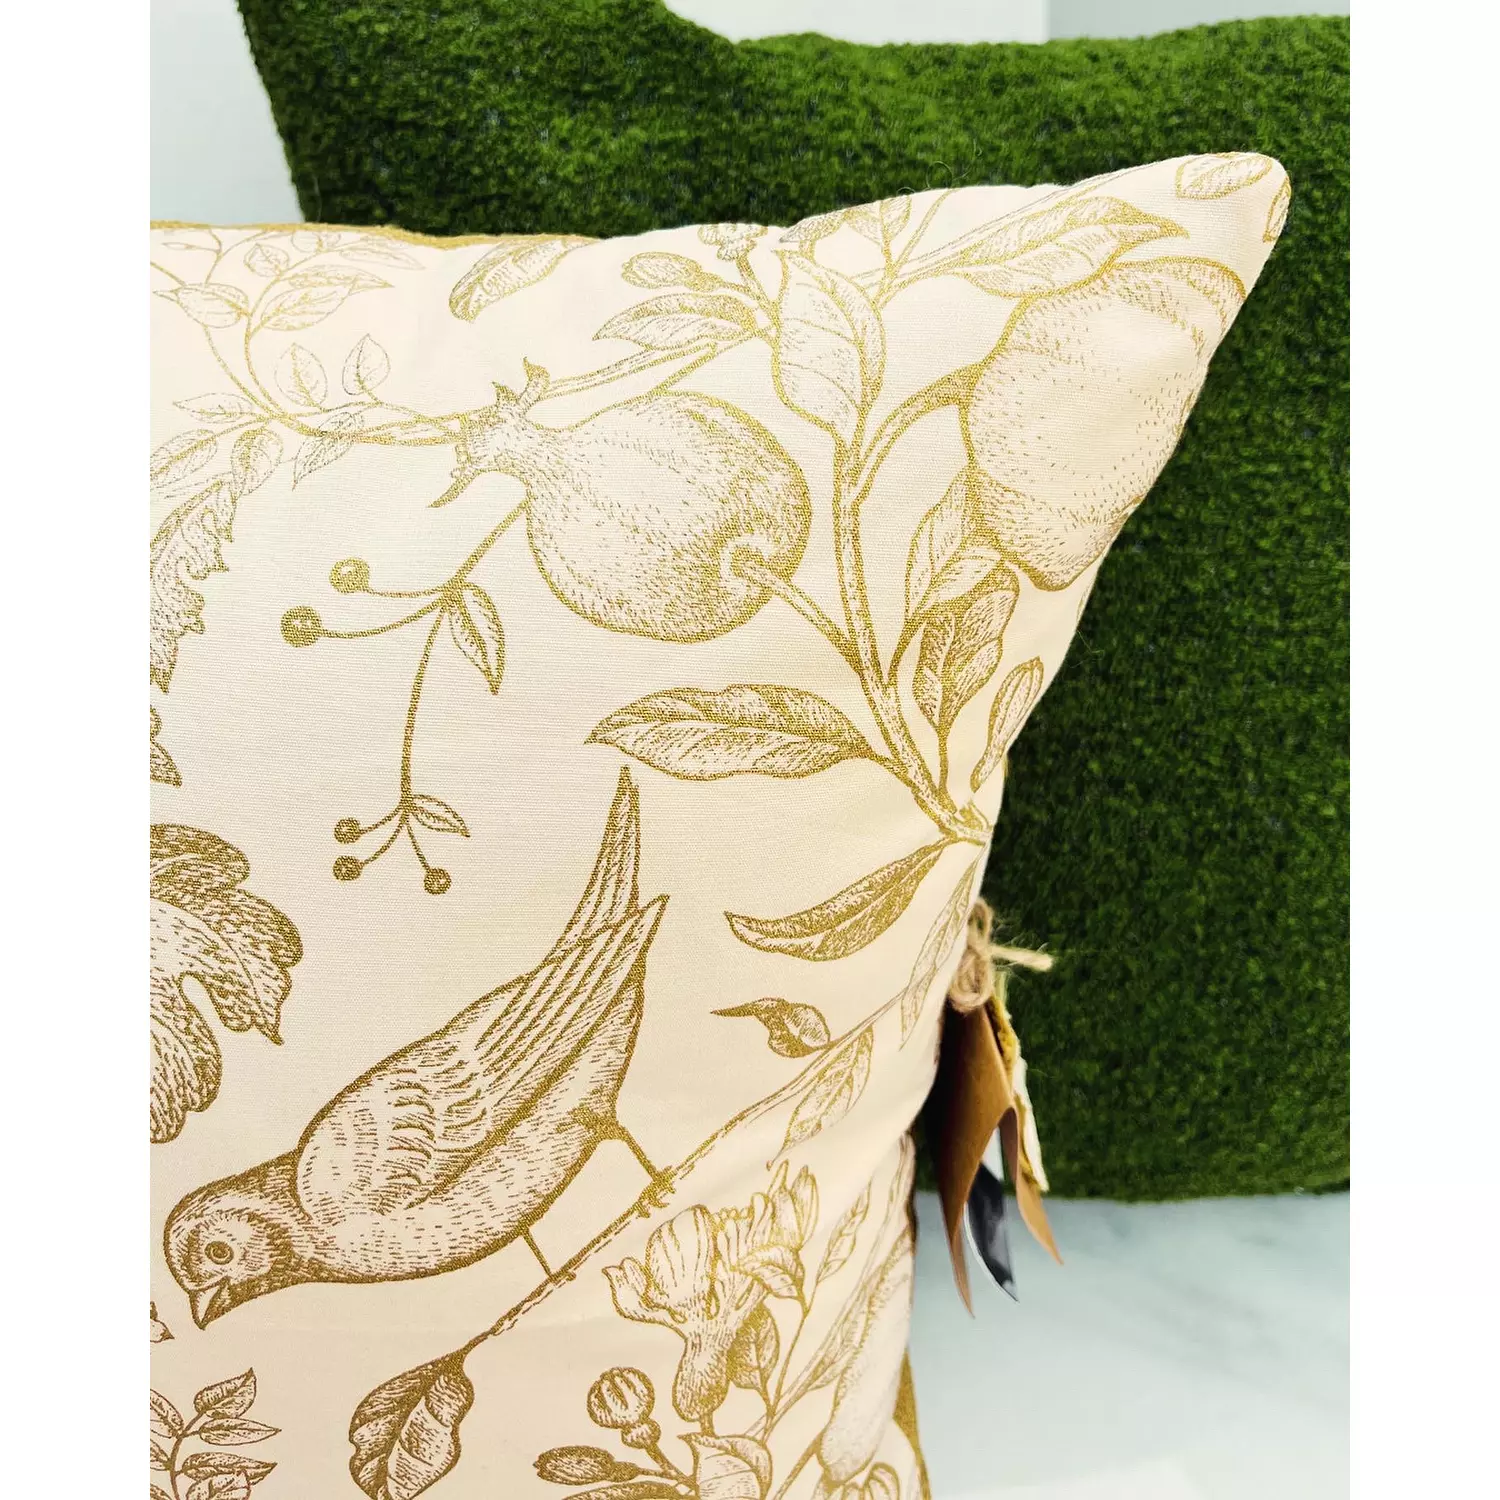 Golden Secret Gardens cushion hover image